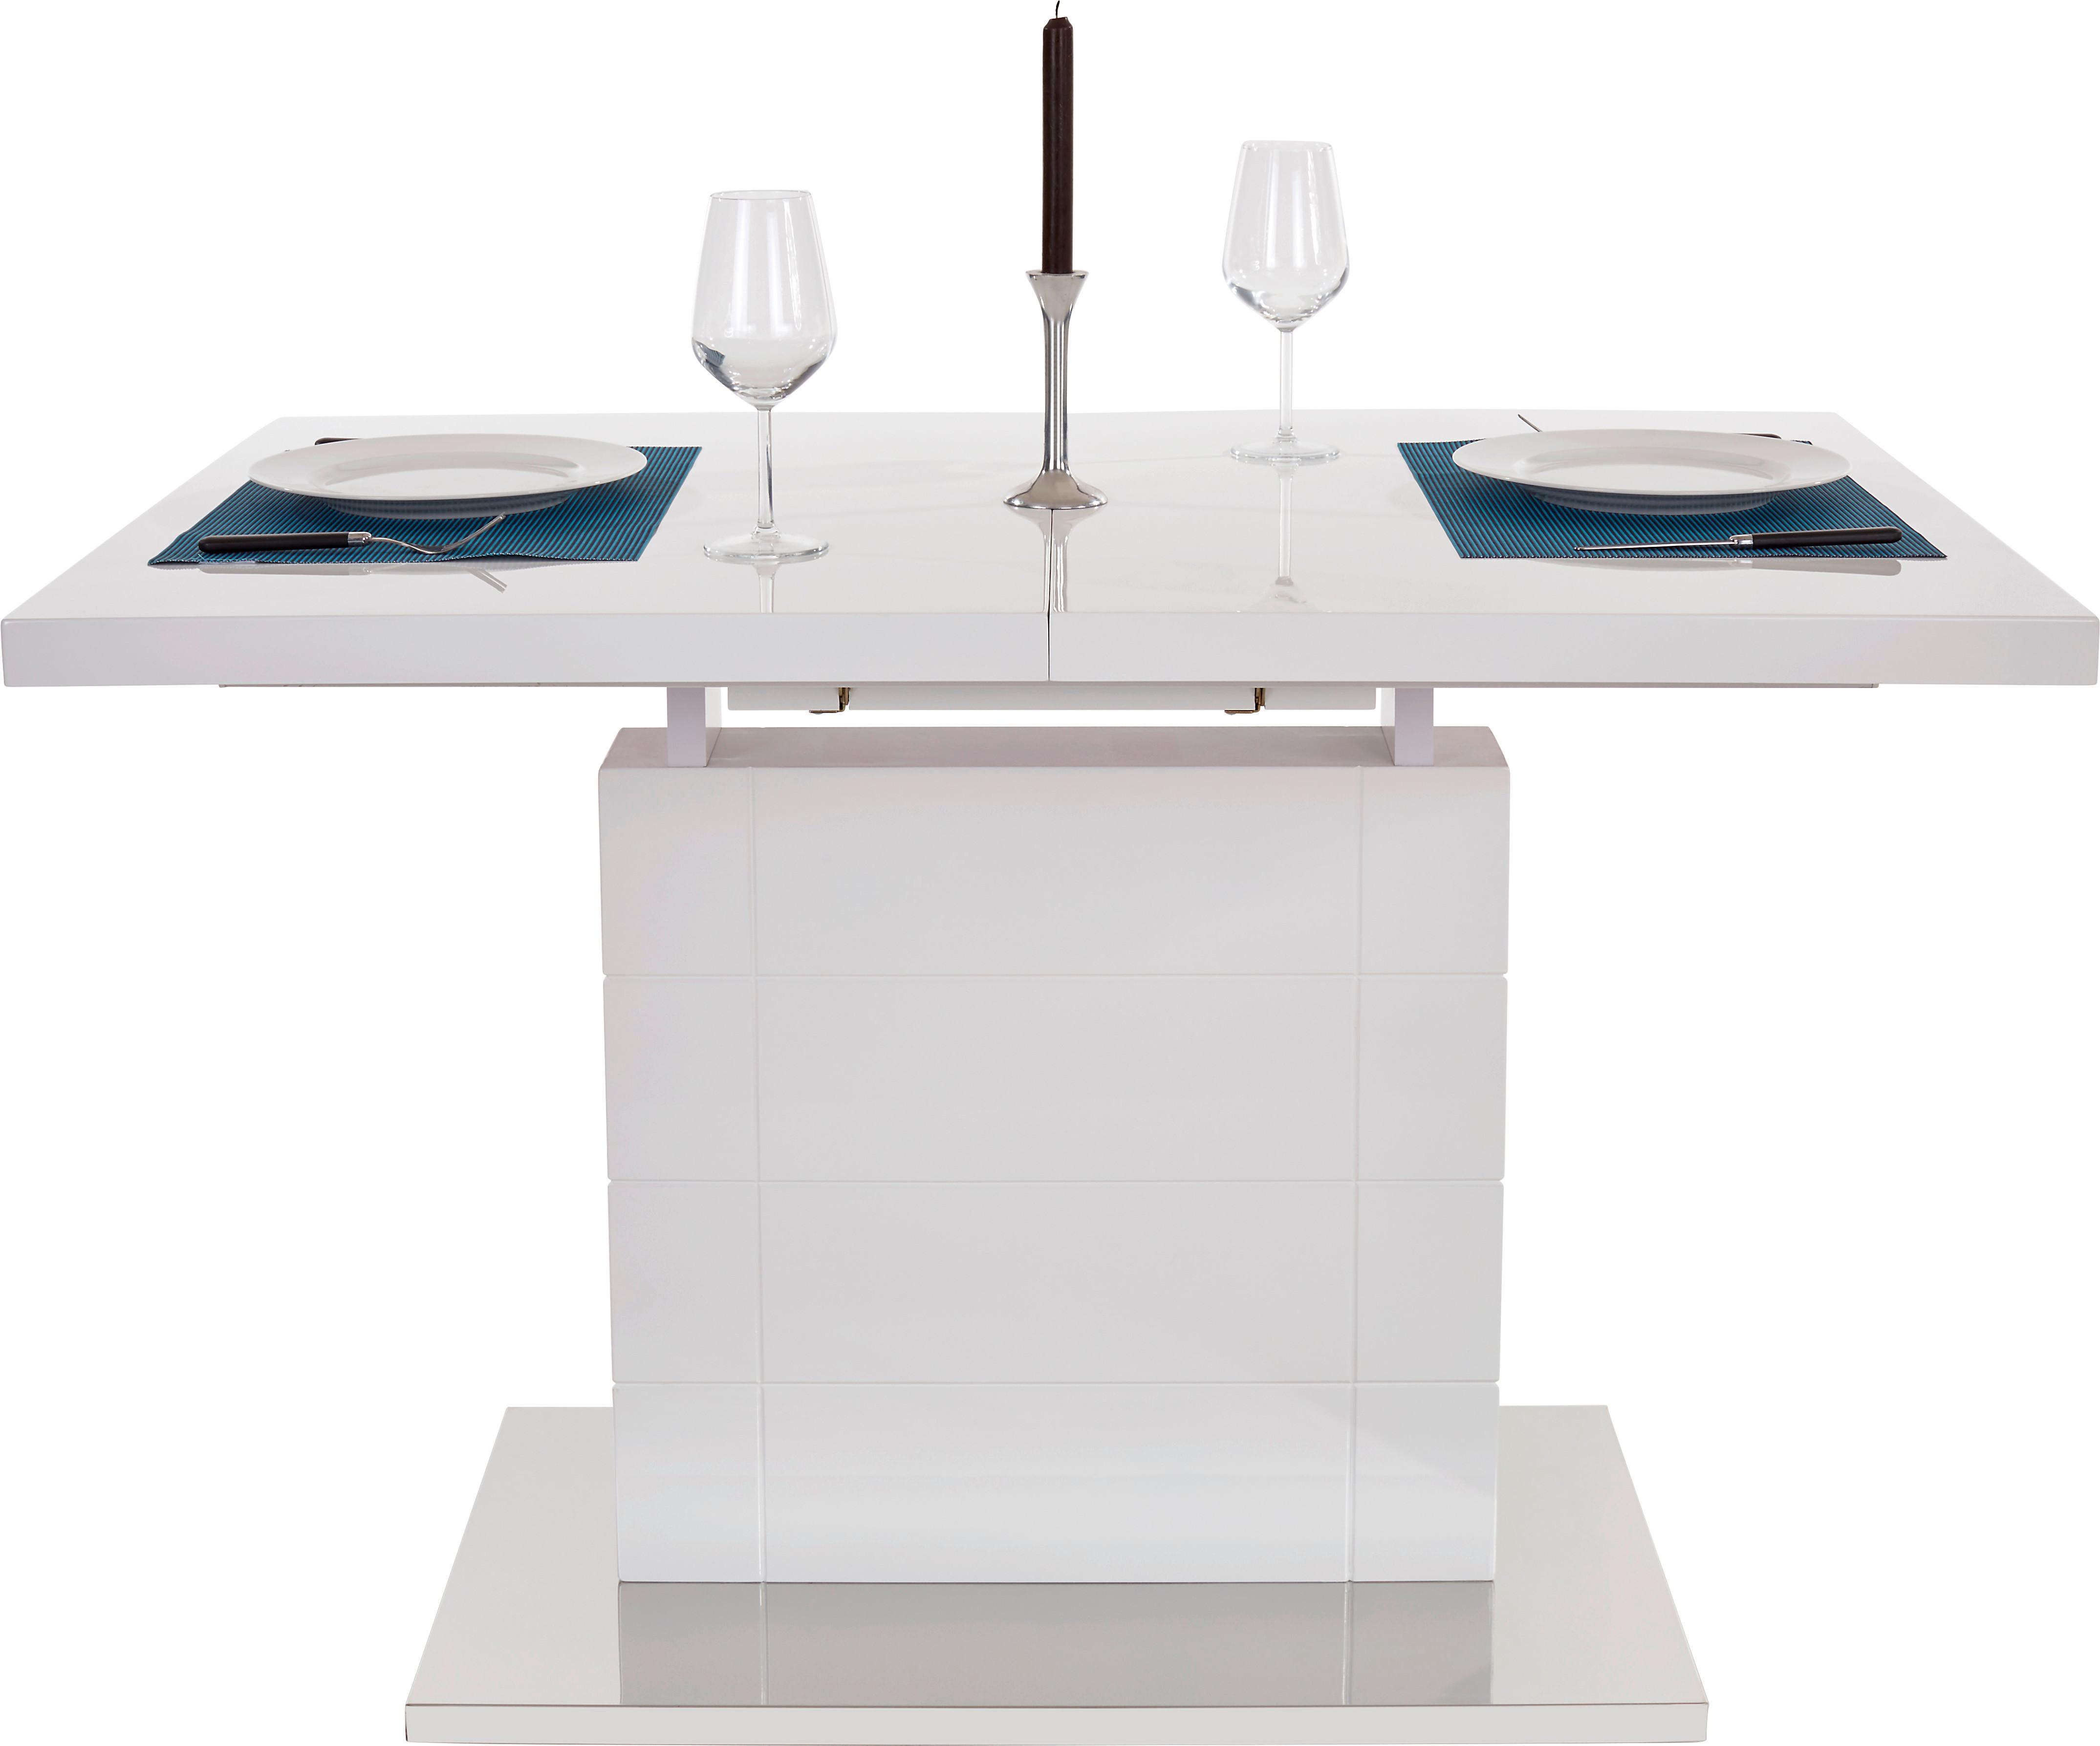 Výsuvný Stůl Raymond 120 Az - bílá/barvy nerez oceli, Moderní, kov/kompozitní dřevo (120-160/76/80cm)